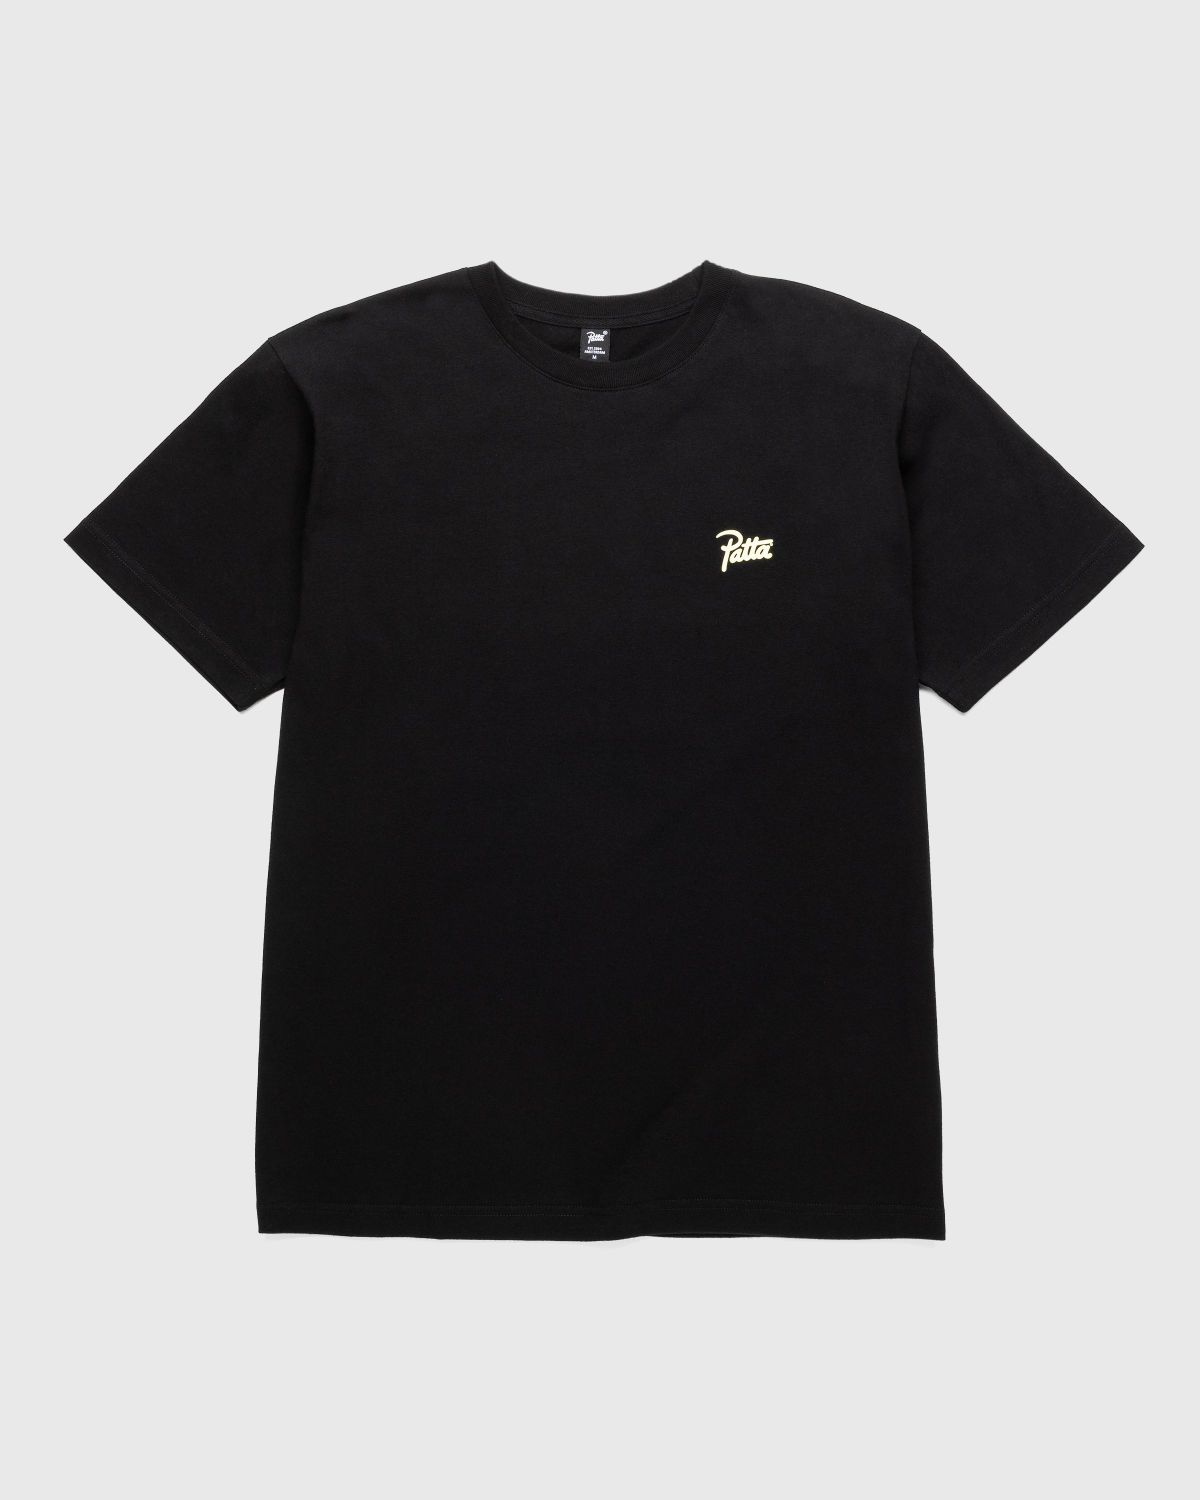 Patta – Freaky T-Shirt Black | Highsnobiety Shop